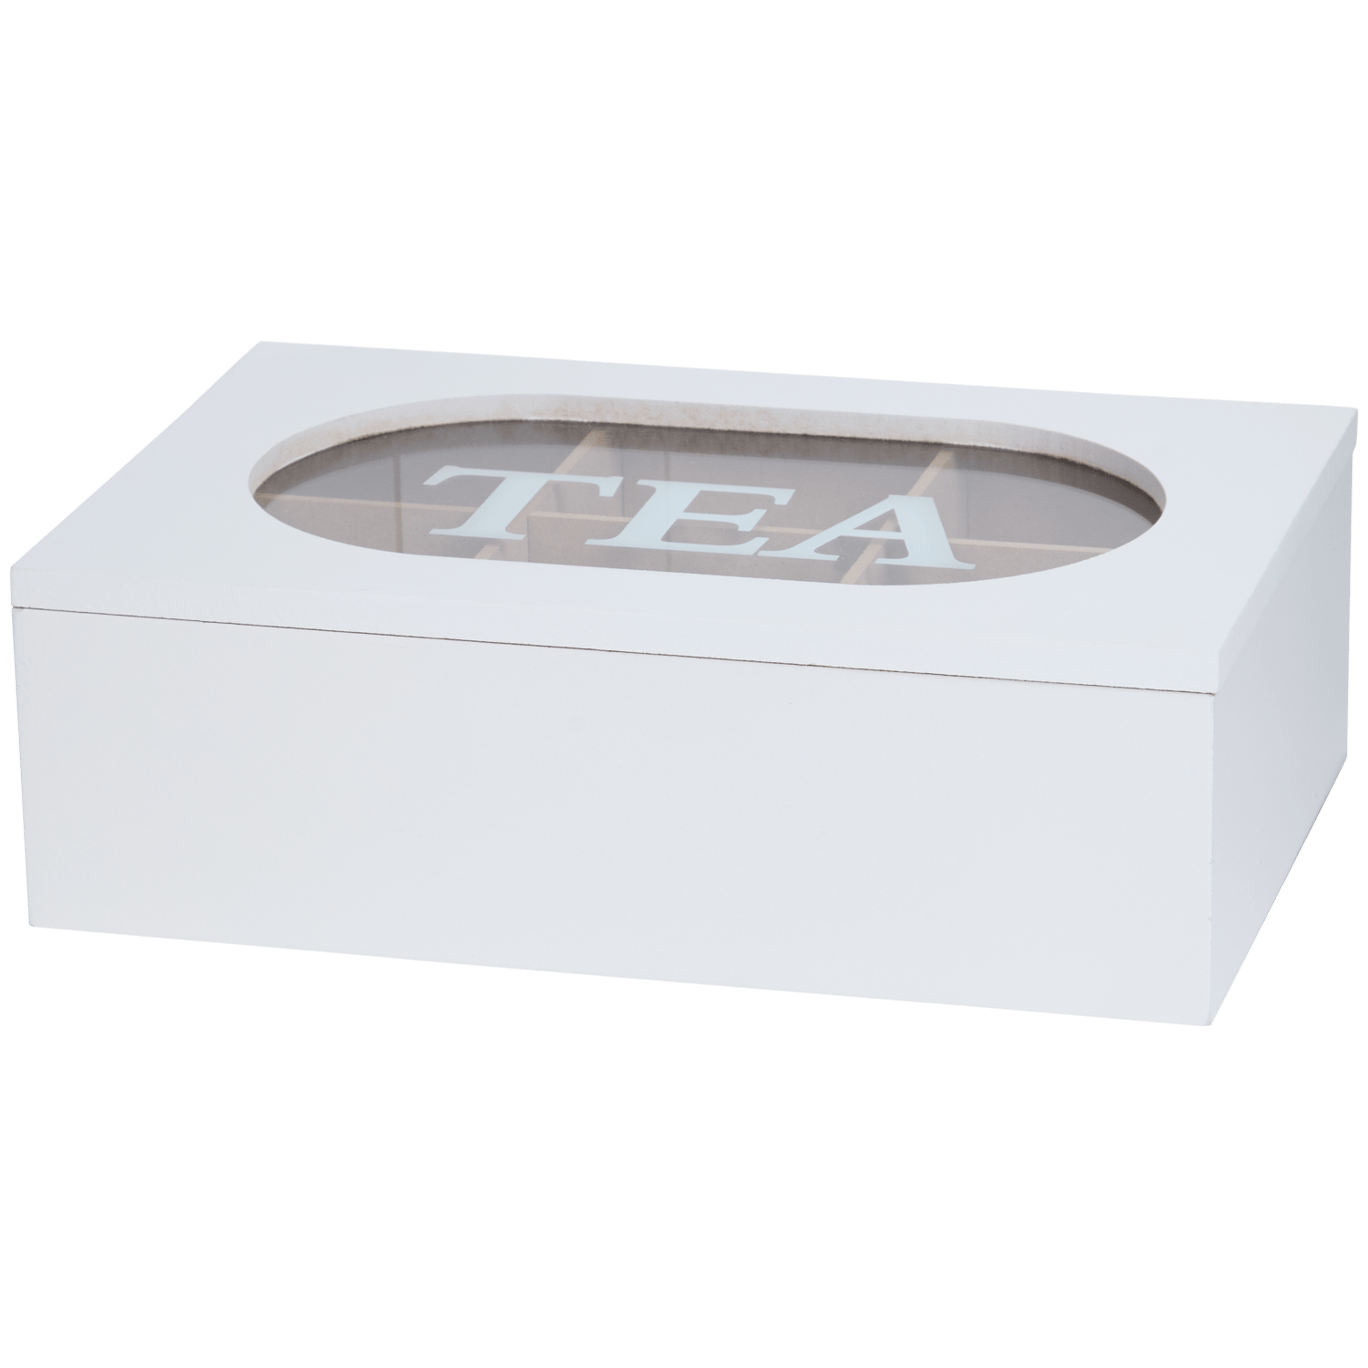 Caixa de chá com texto